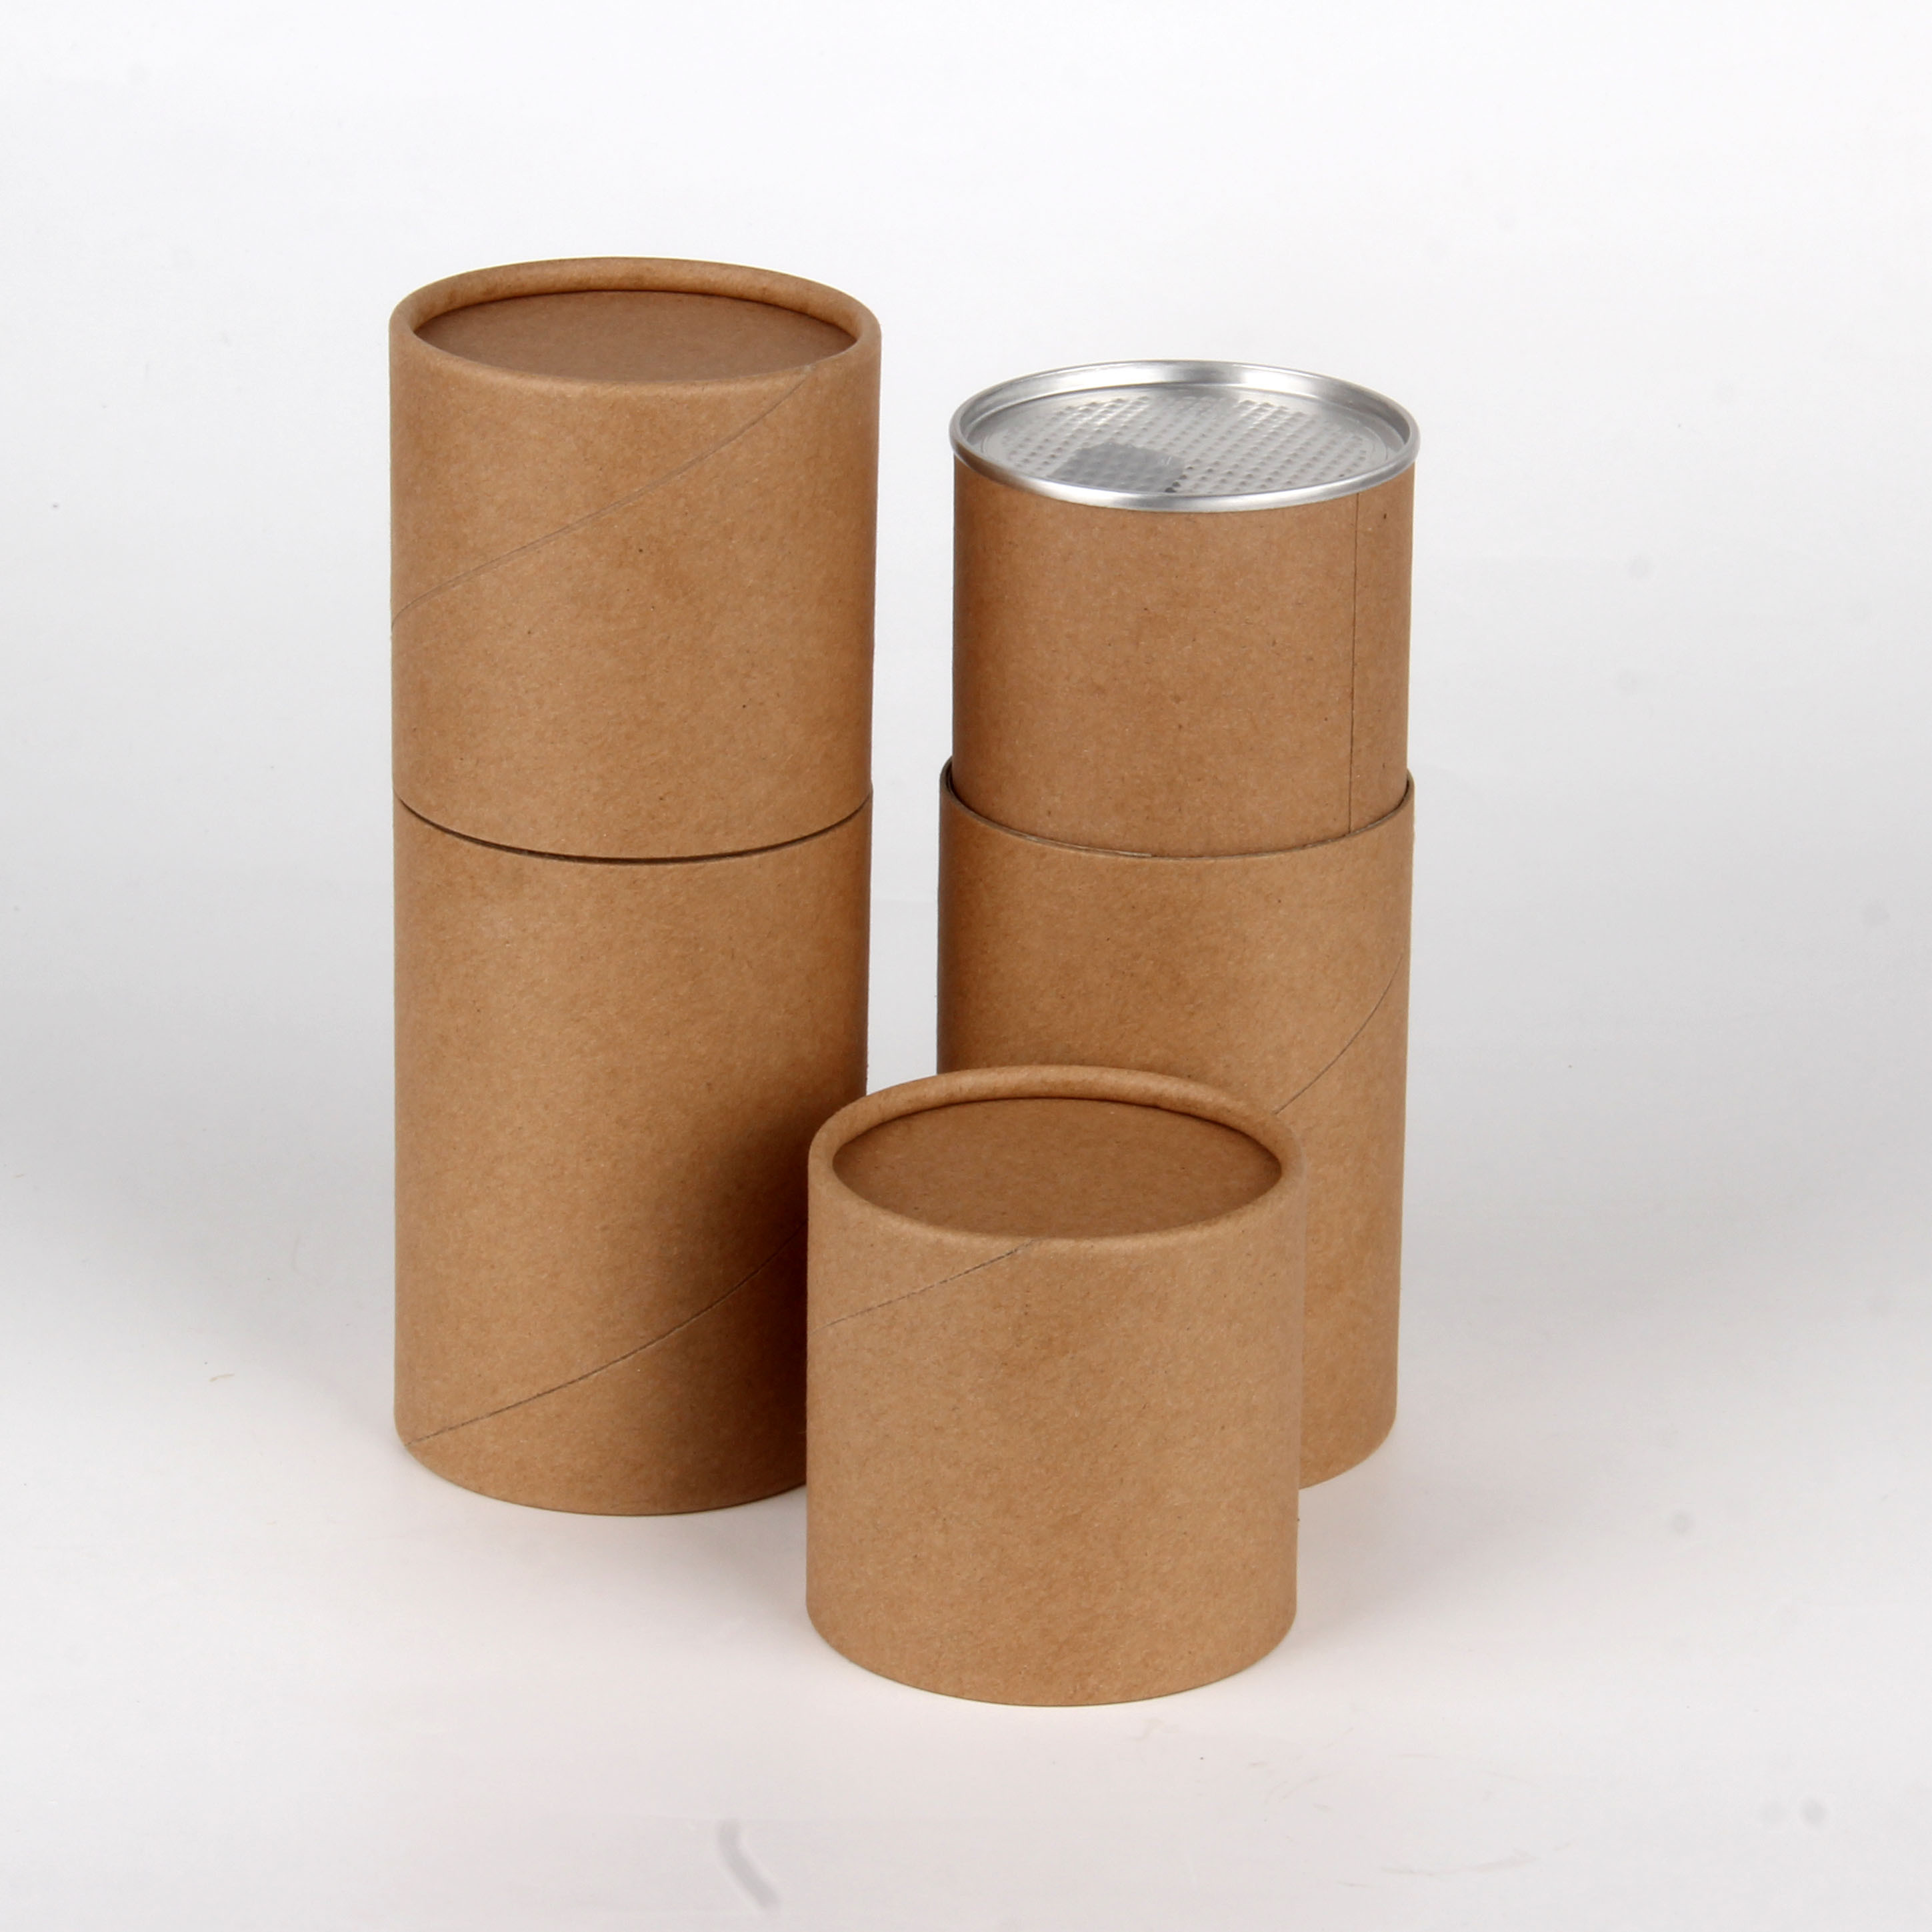 Dobry Air - Proof kartonowe pudełka do przechowywania, okrągłe tuby kartonowe do suchych potraw